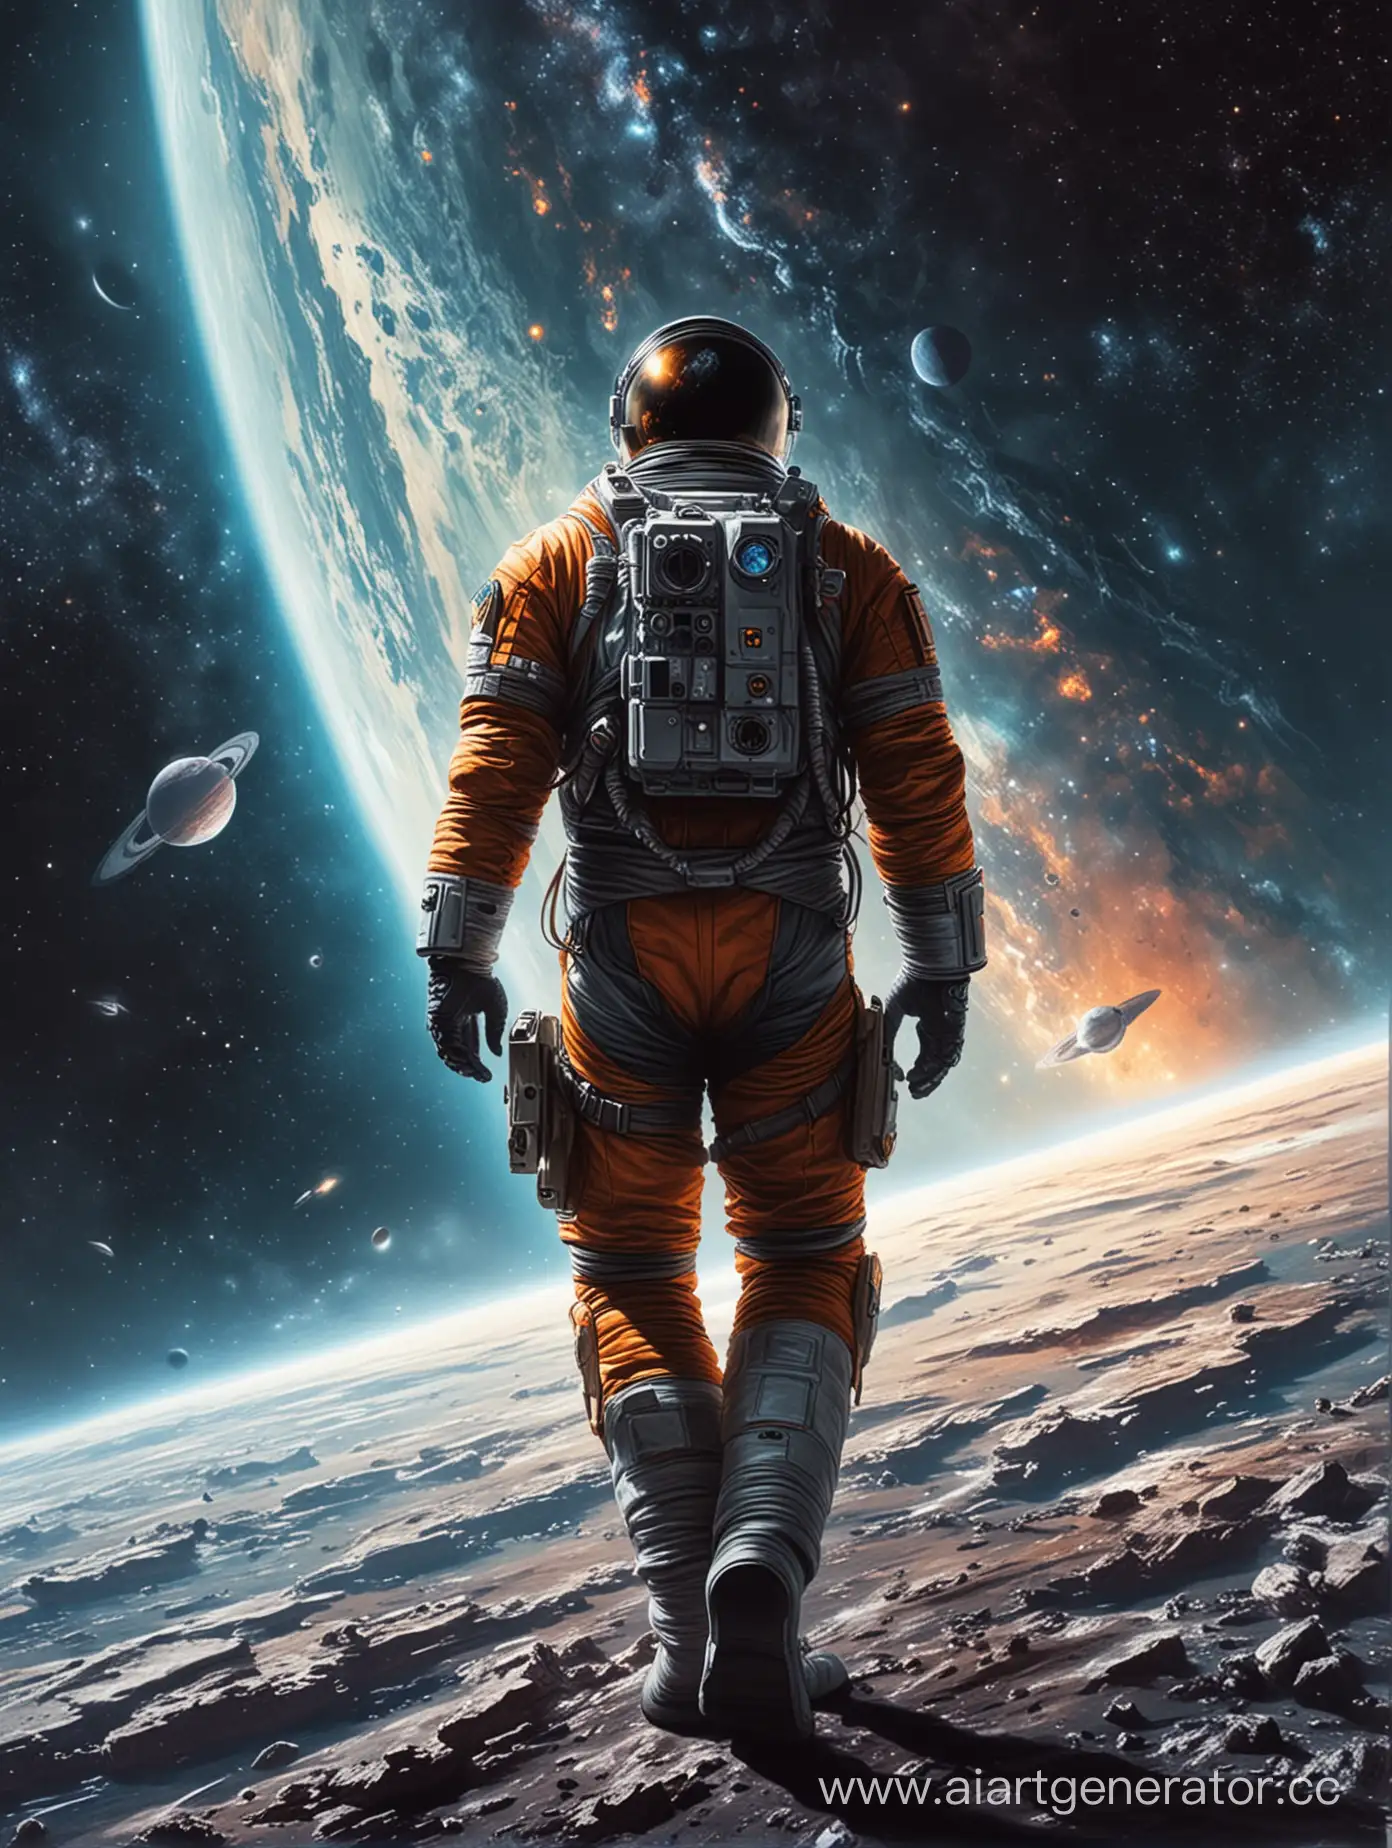 Exploring-the-Cosmos-Lone-Astronaut-in-Futuristic-Space-Exploration-Scene